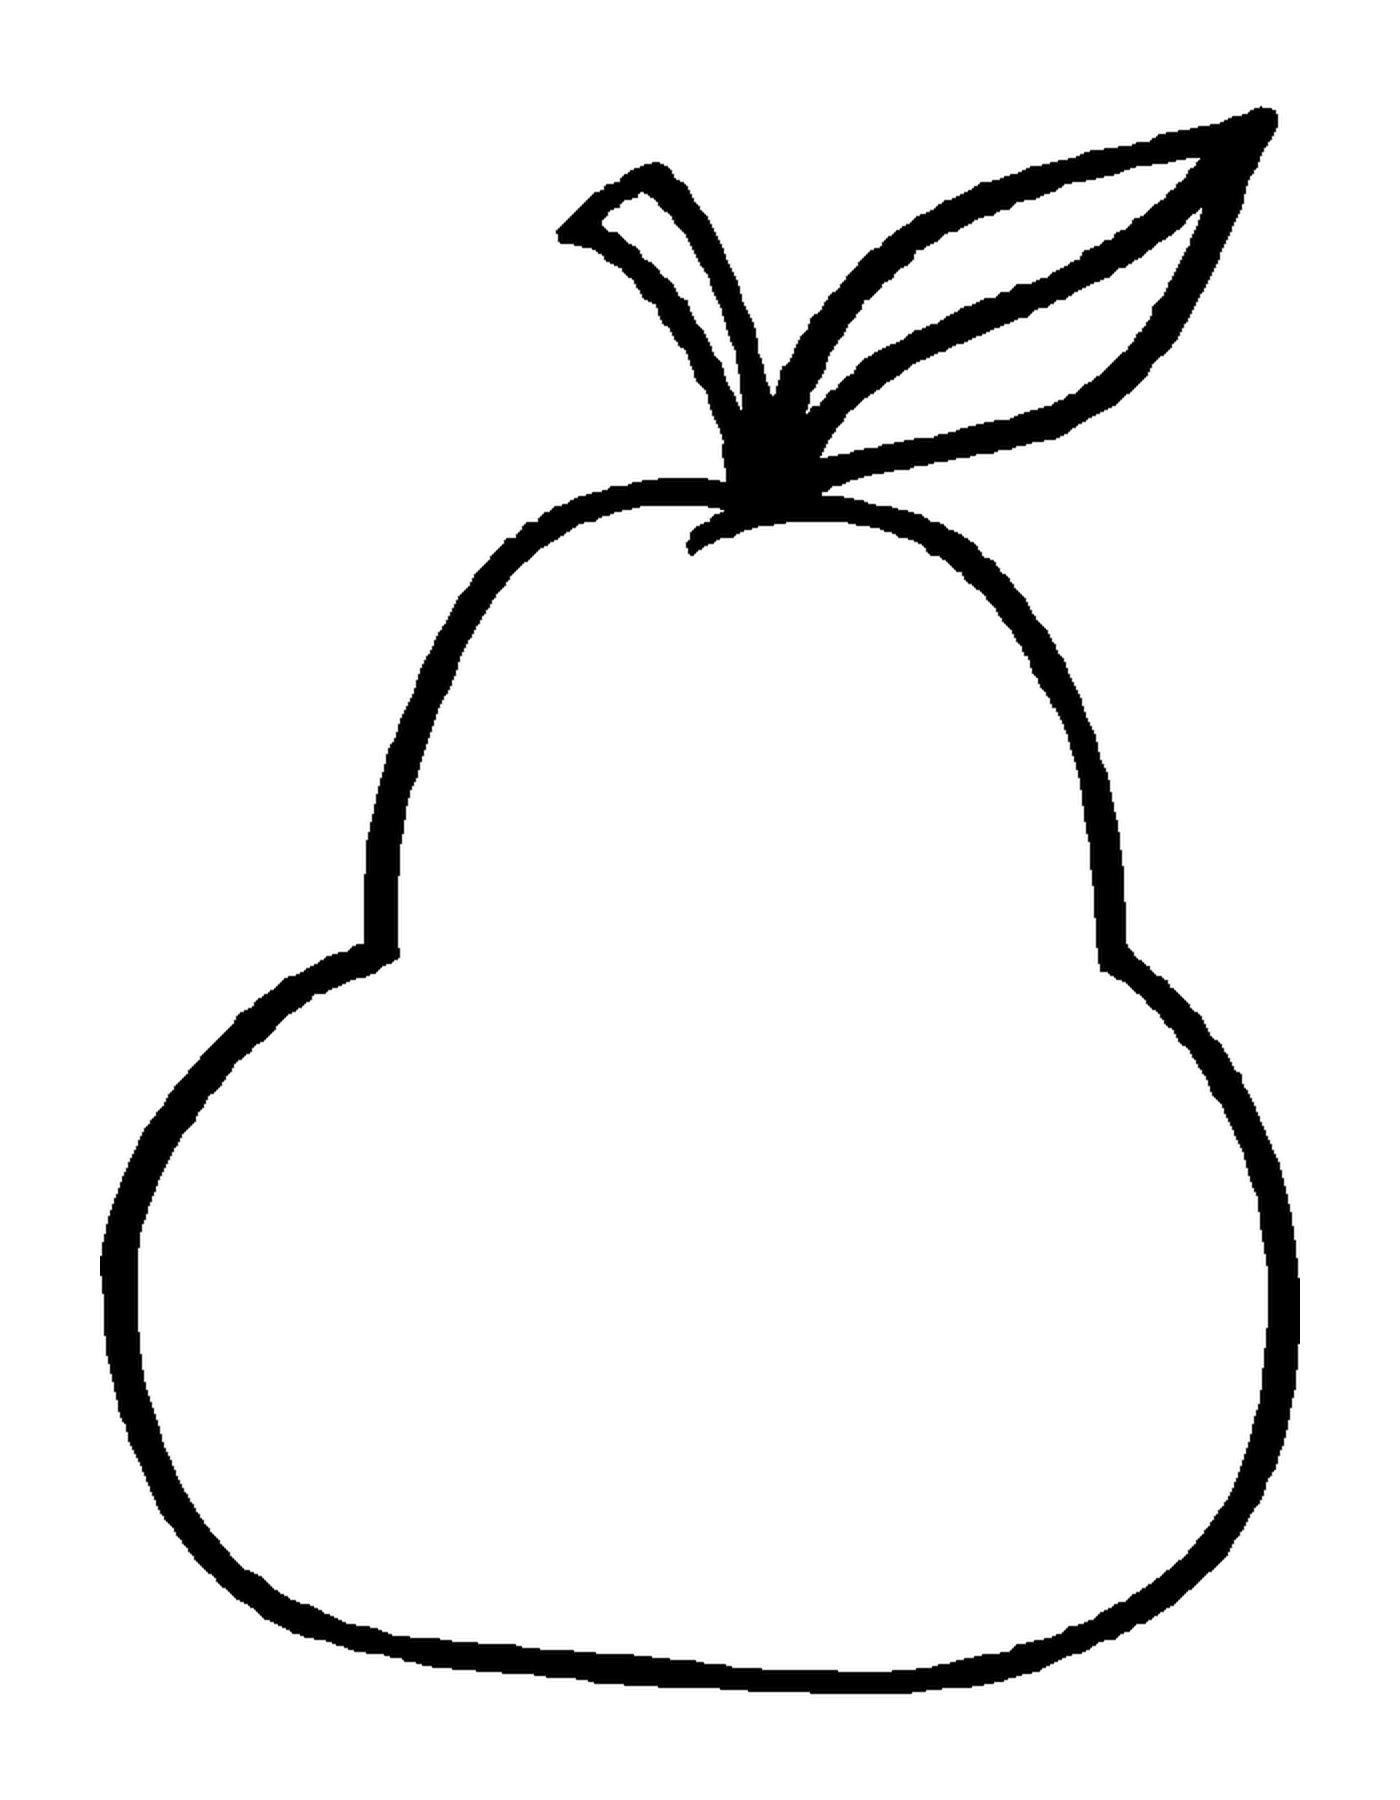  Abbildung einer Birne 